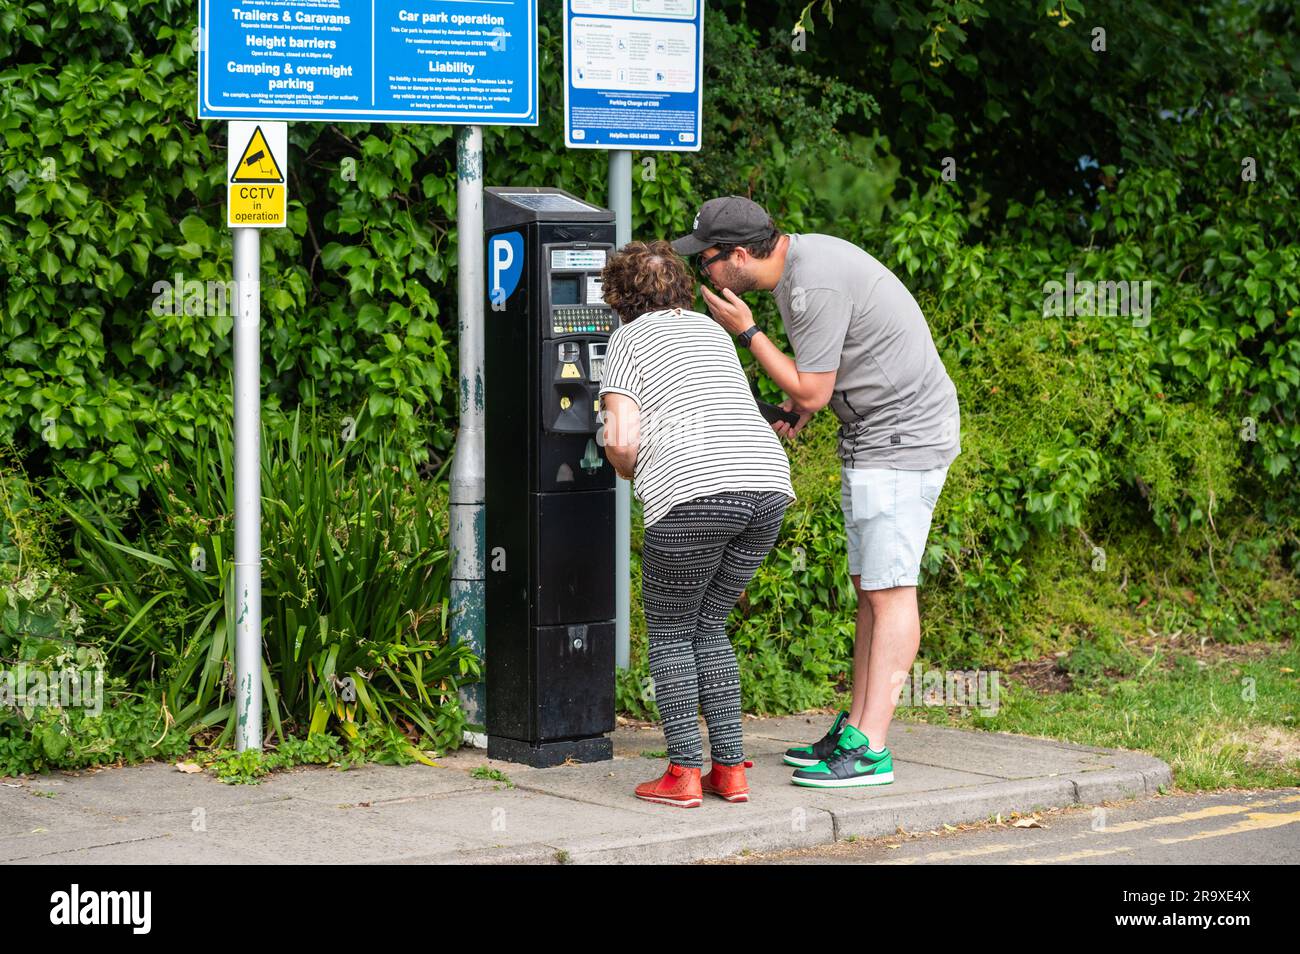 Personen, die für das Parken auf einem Parkplatz an einem Automaten bezahlen. Parken bezahlen, Parkschein kaufen. In England, Großbritannien. Stockfoto